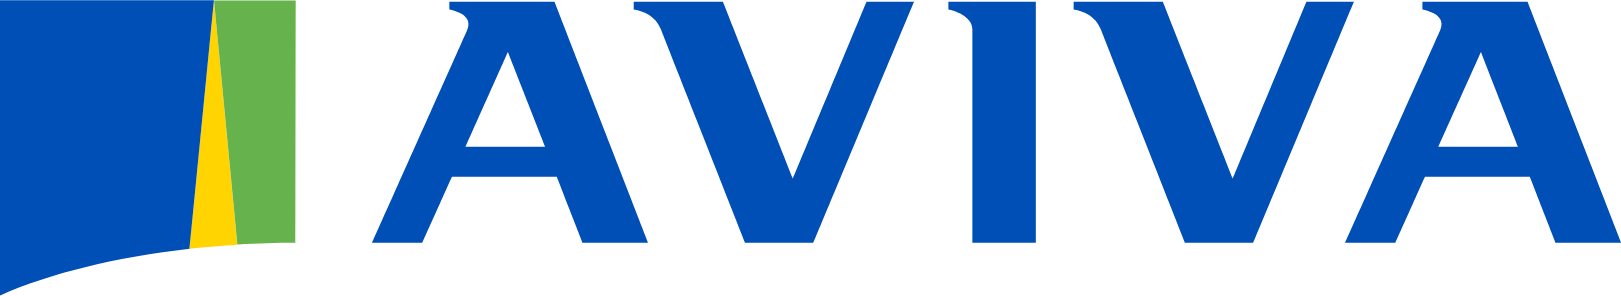 Aviva logo large (transparent PNG)